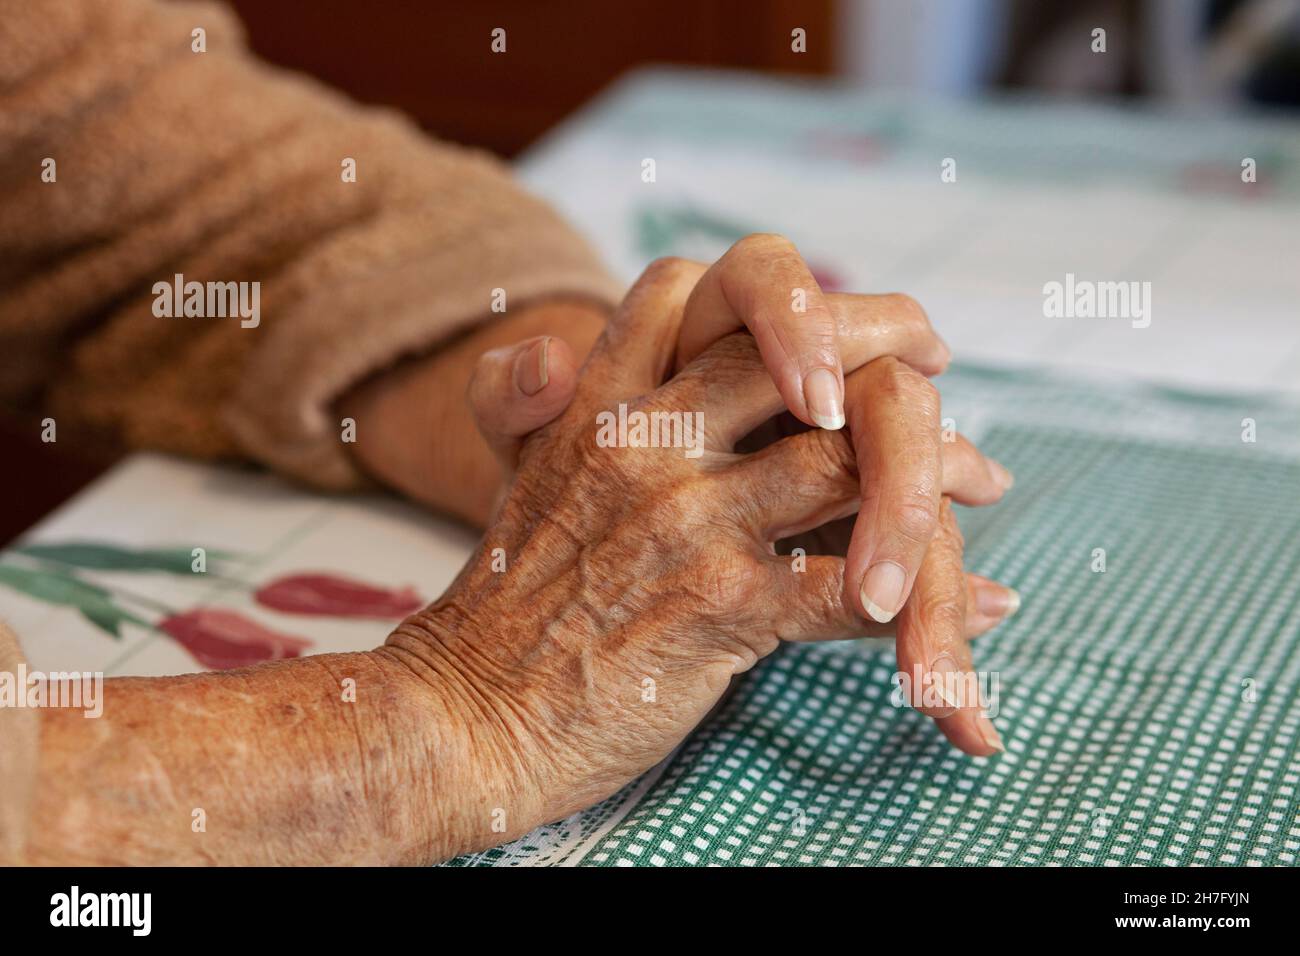 Eine Nahaufnahme der Hände einer älteren Frau, die Mr - Model umklammert, wurde veröffentlicht Stockfoto